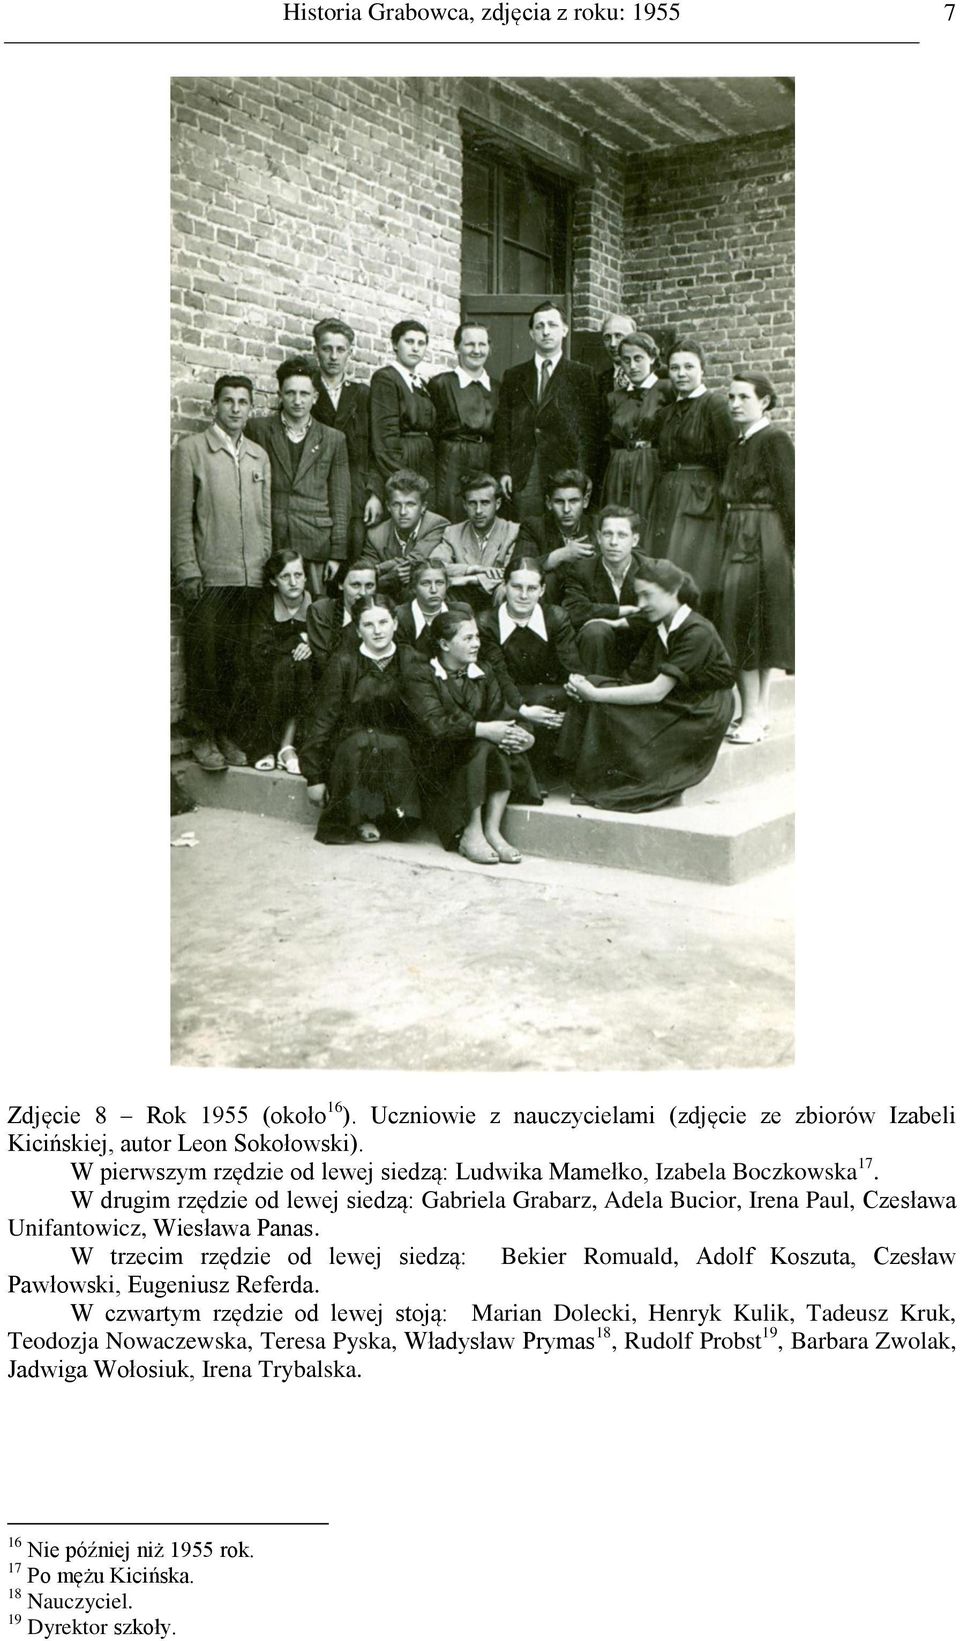 W drugim rzędzie od lewej siedzą: Gabriela Grabarz, Adela Bucior, Irena Paul, Czesława Unifantowicz, Wiesława Panas.